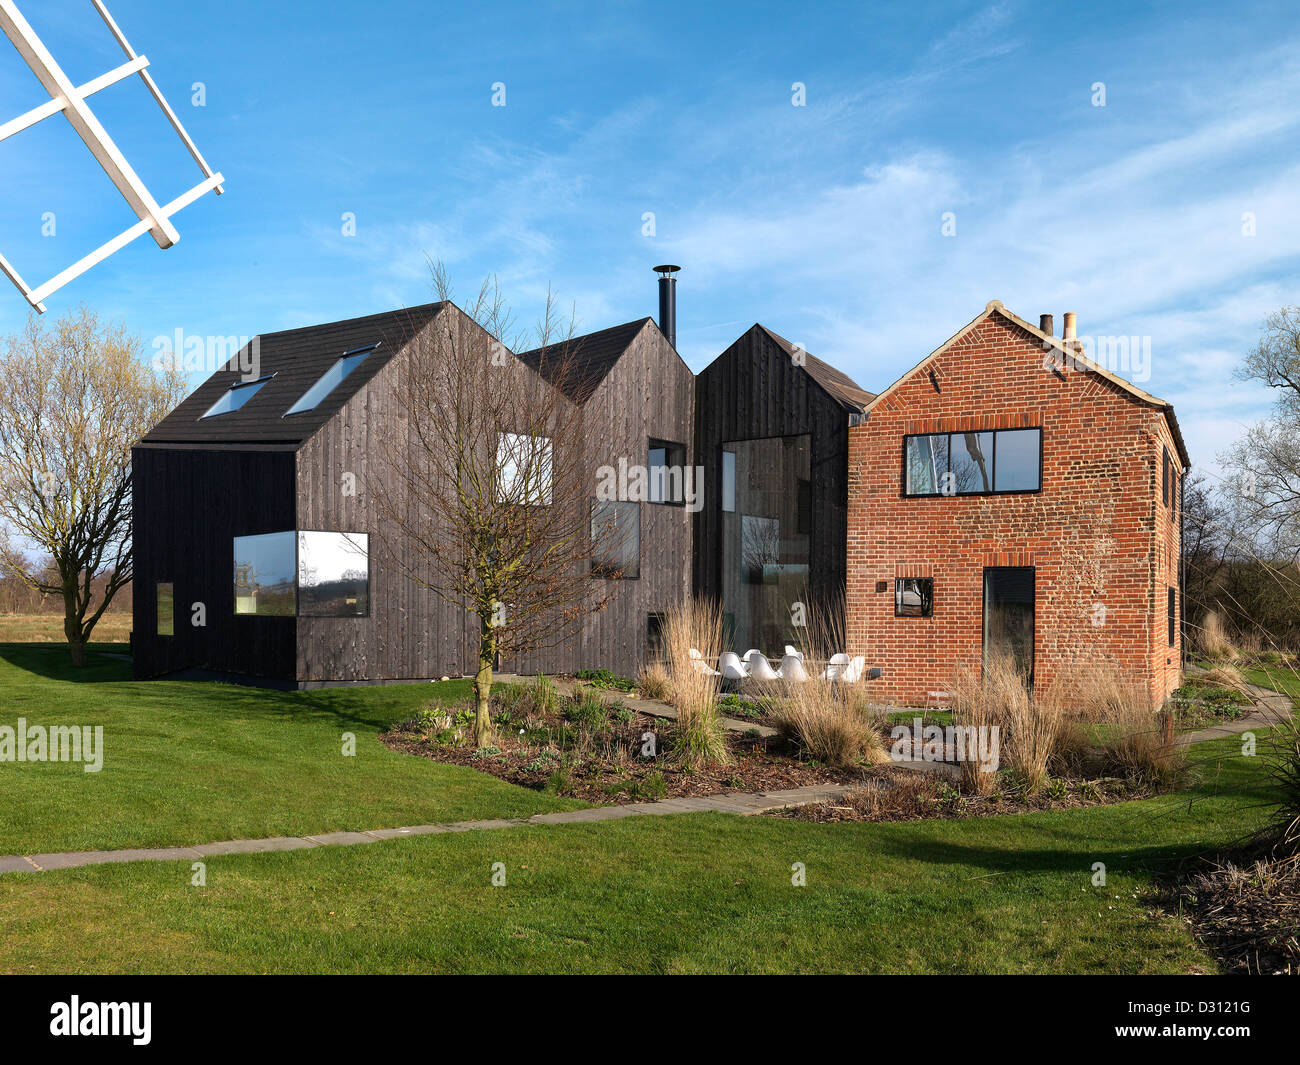 Hunsett Mühle, Stalham, Vereinigtes Königreich. Architekt: ACME, 2010. Gartenansicht mit Windmühle Klinge. Stockfoto